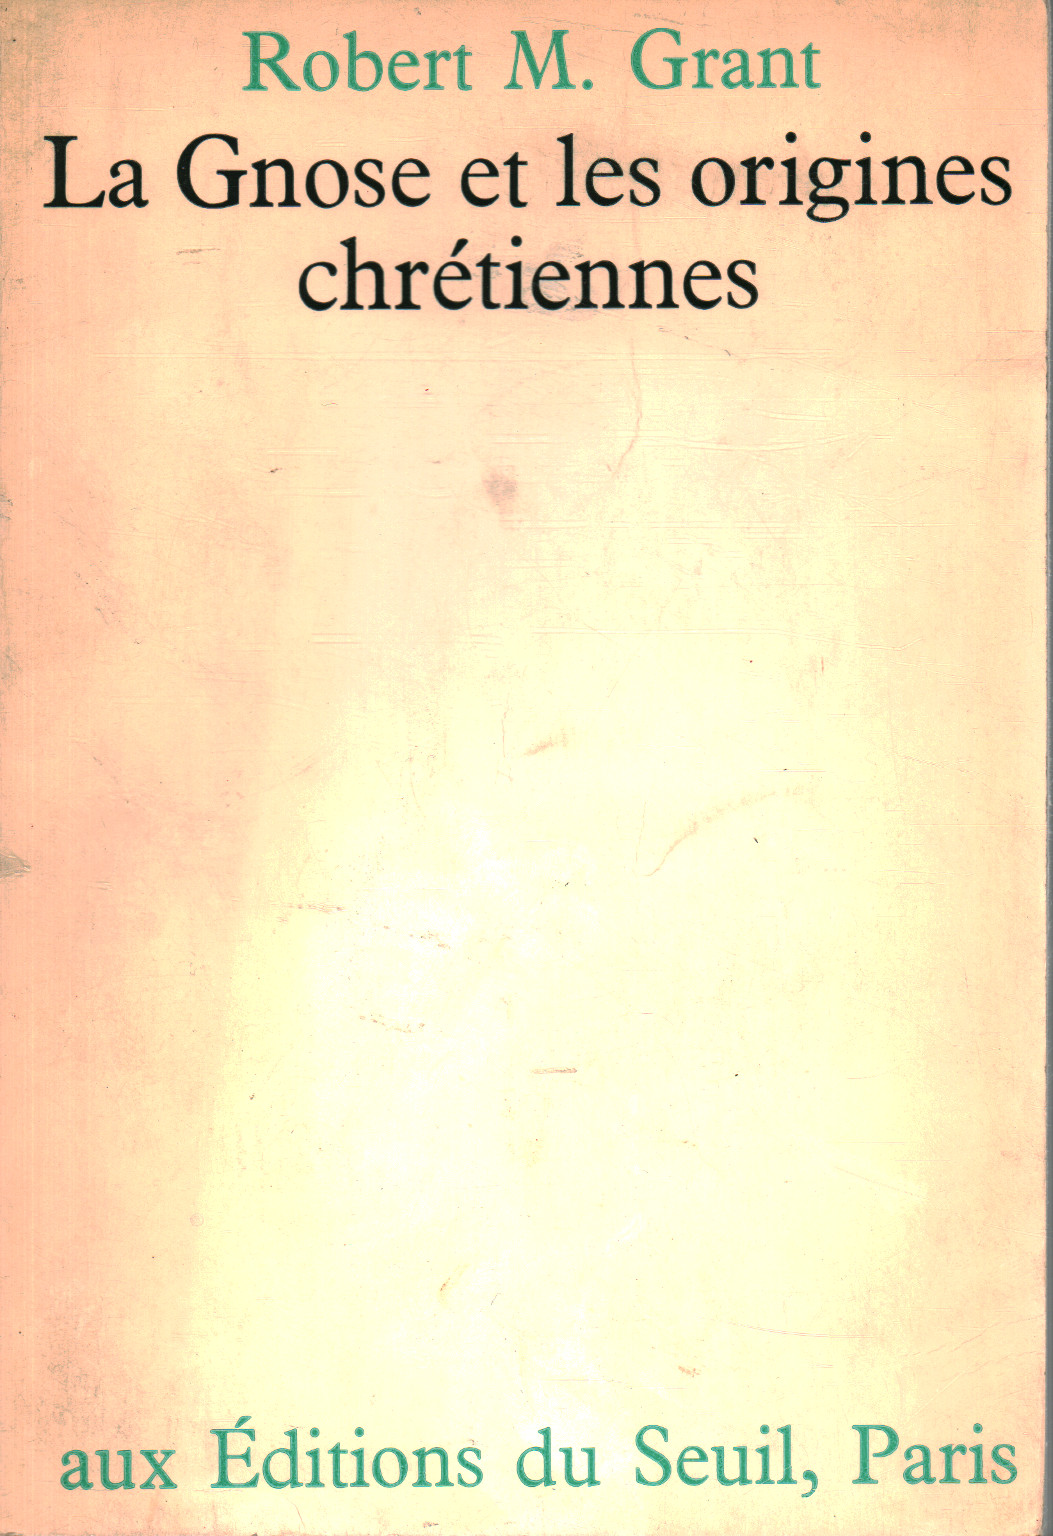 La gnose et les origines chrètiennes, Robert M. Grant